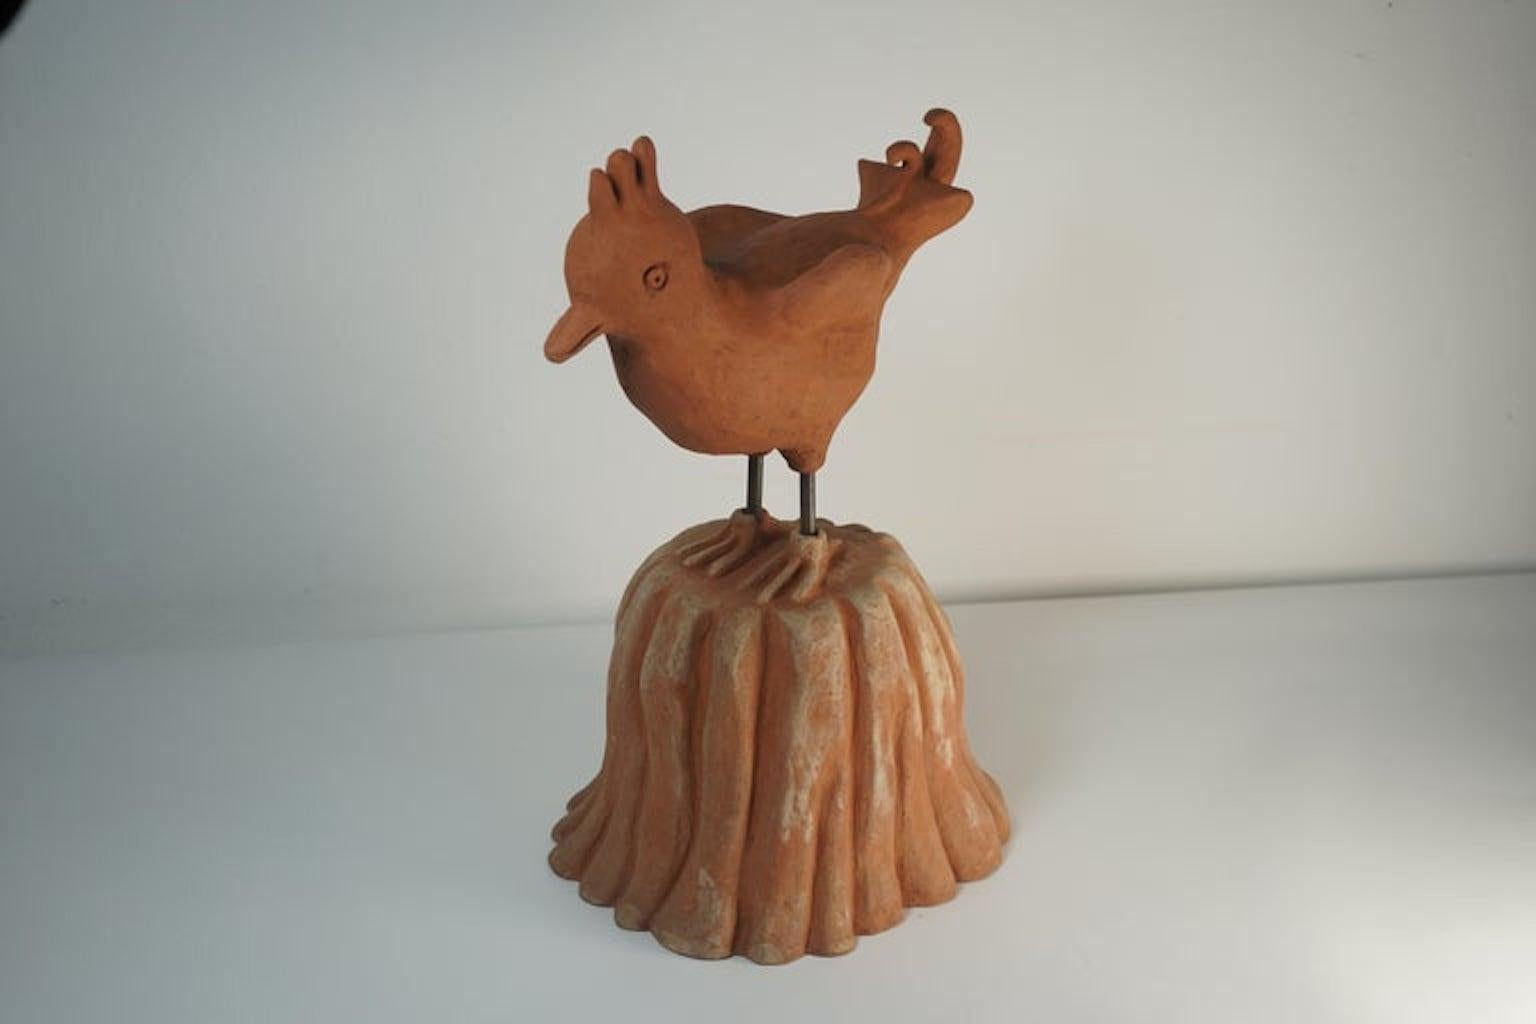 Sculpture en céramique Fantastic Bird Model conçue par Nathalie Du Pasquier et réalisée par Alessio Sarri en 1993. Gravé dans la poterie, signature de l'artiste et du fabricant.
Le renard fait partie d'une série de sculptures composées de 7 animaux